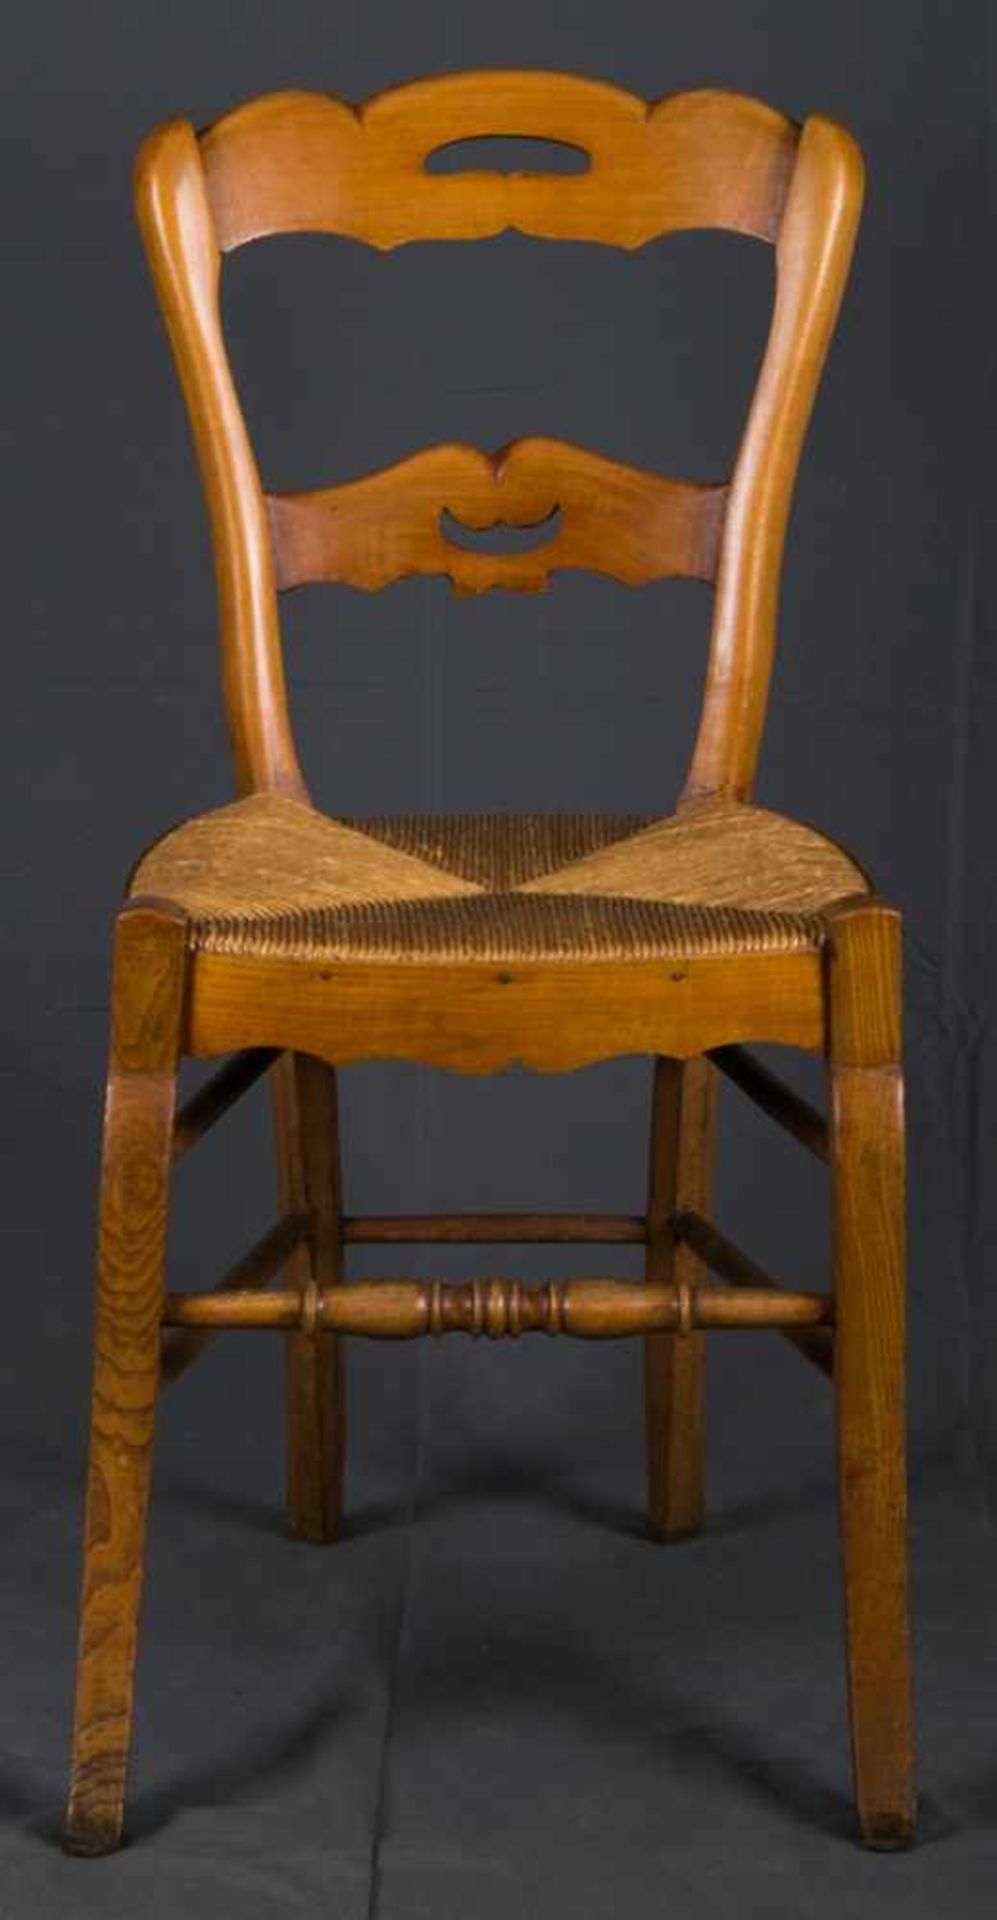 Folge von 3 bäuerlichen Stühlen mit Binsensitzen, Gestellen in Buche & Rüster. 19./20. Jhd. - Bild 5 aus 6